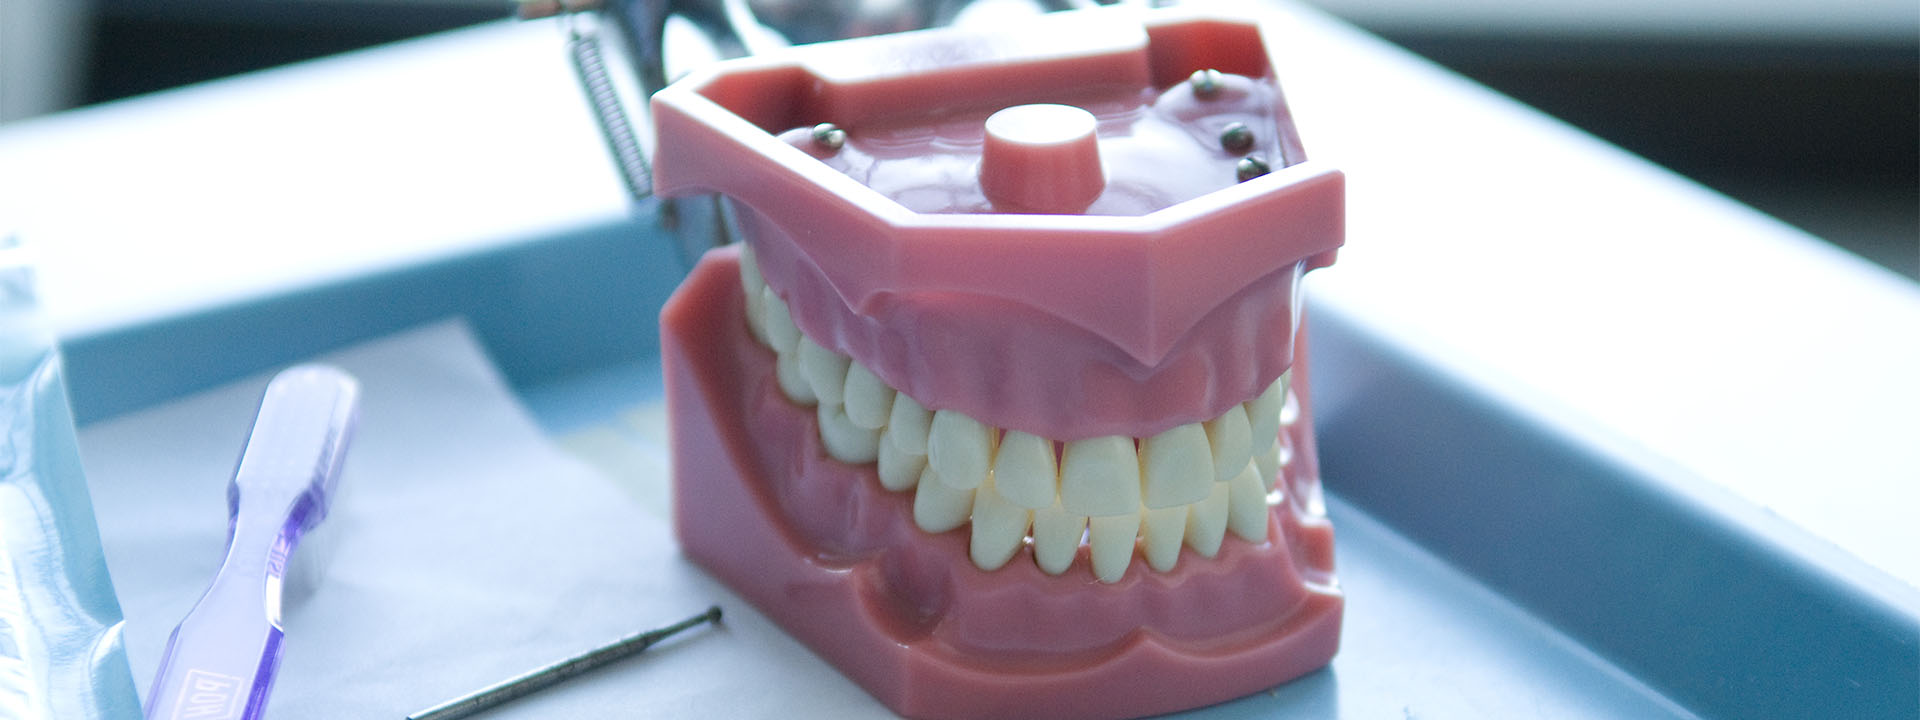 Model of human teeth